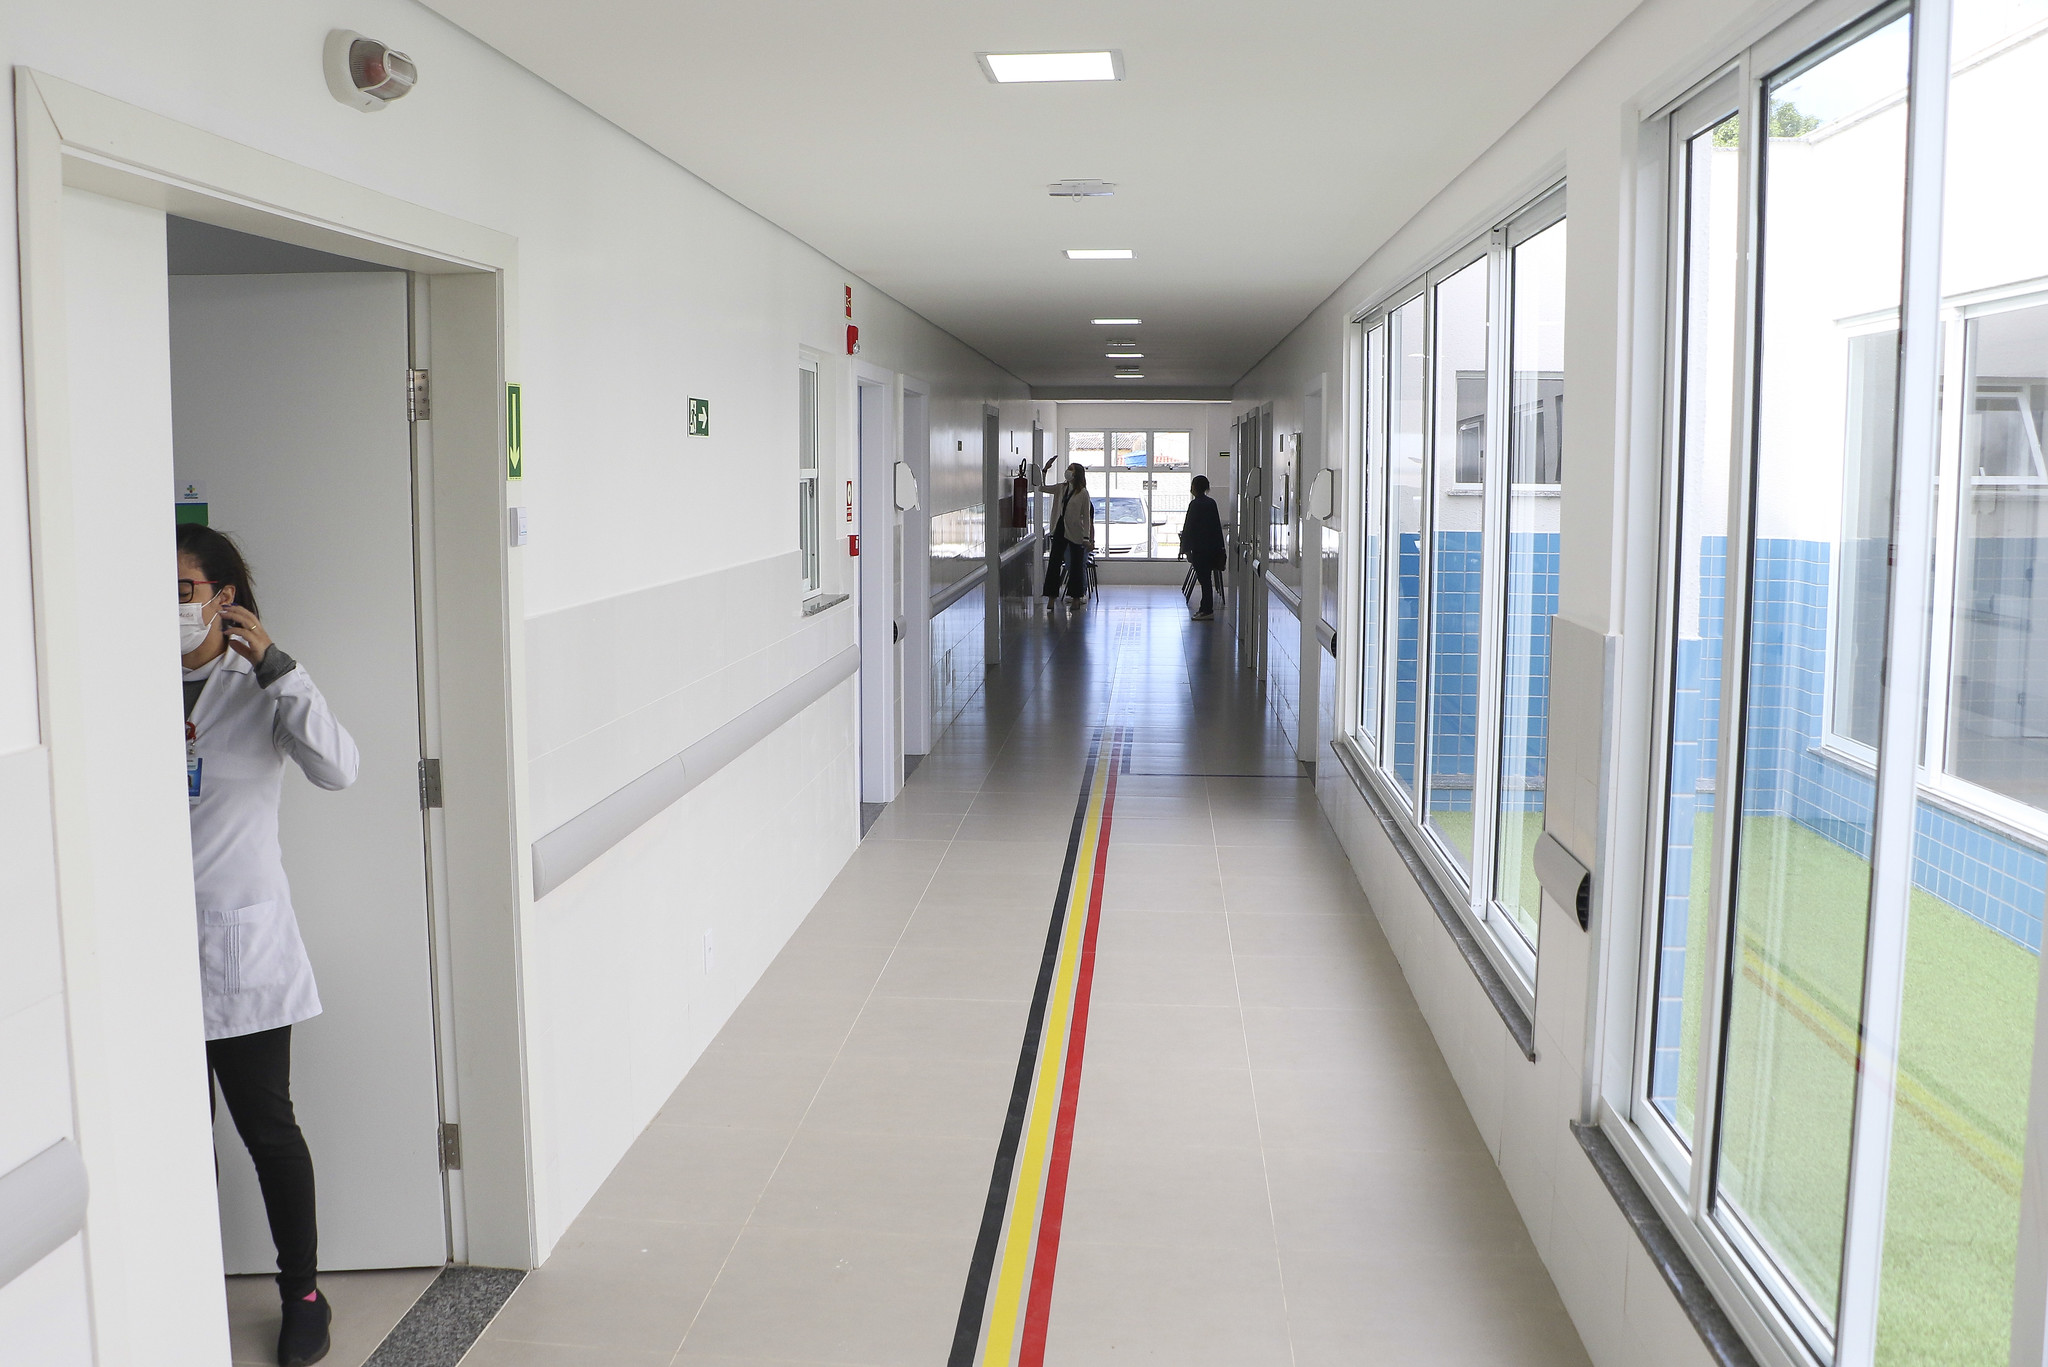 Unidades de saúde devem adaptar os sistemas de orientação por cores de modo a incluir alguma sinalização numérica ou por outro tipo de código | Foto: Renato Alves/Agência Brasília